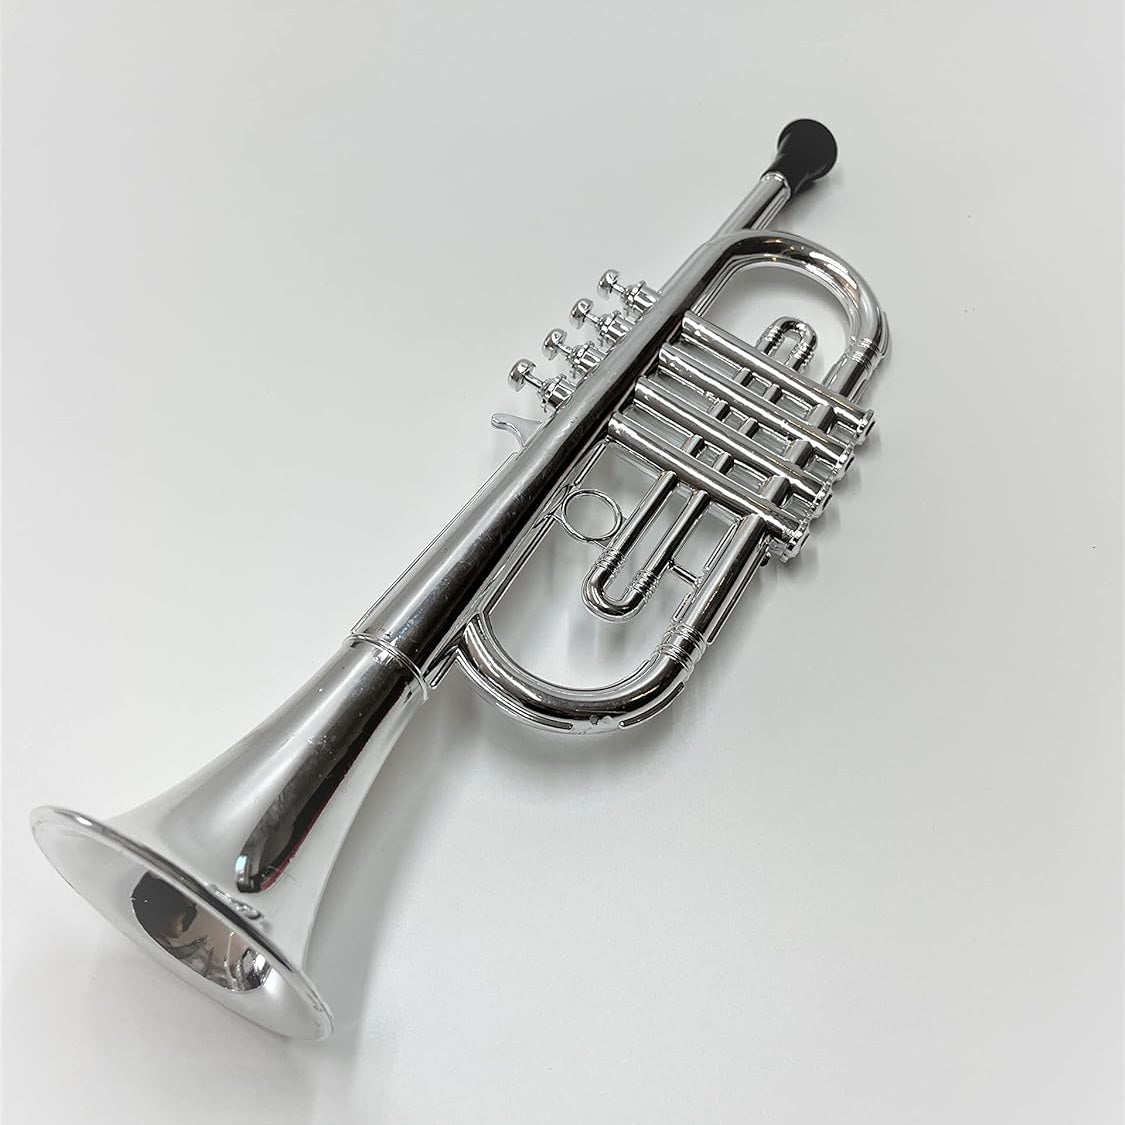 Trompette jouet / Clarinette enfant : Éveil musical - Jouet Montessori